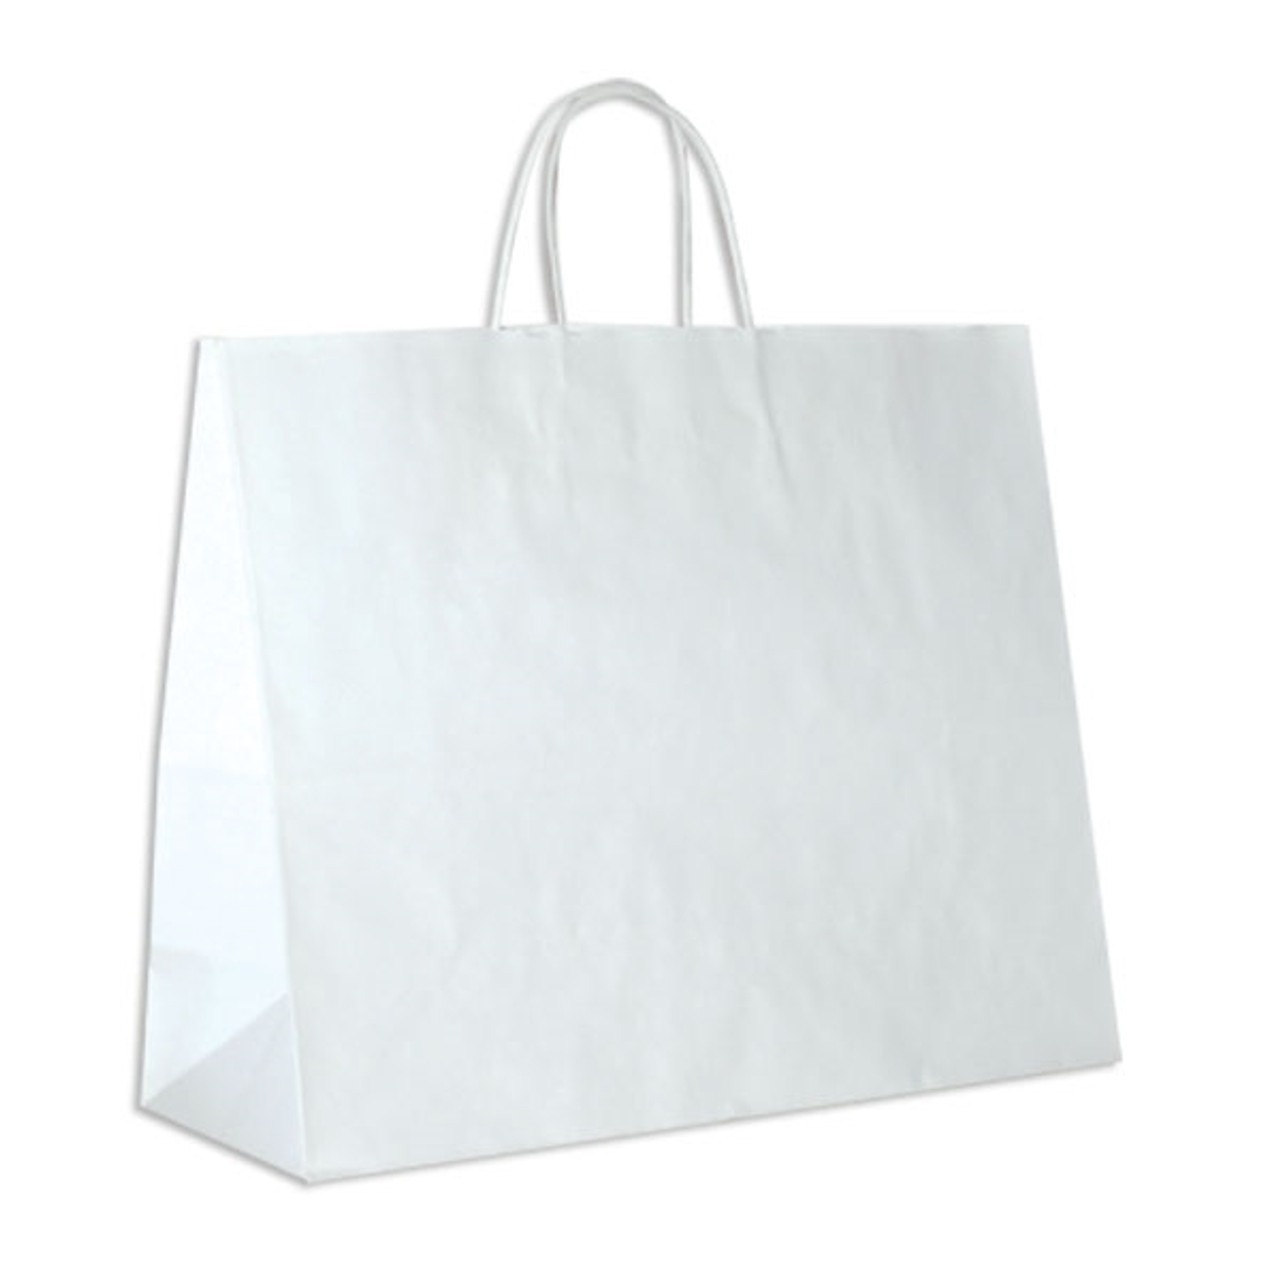 White Kraft Paper Bags - 16 x 6 x 13 - 250 Bags/Case